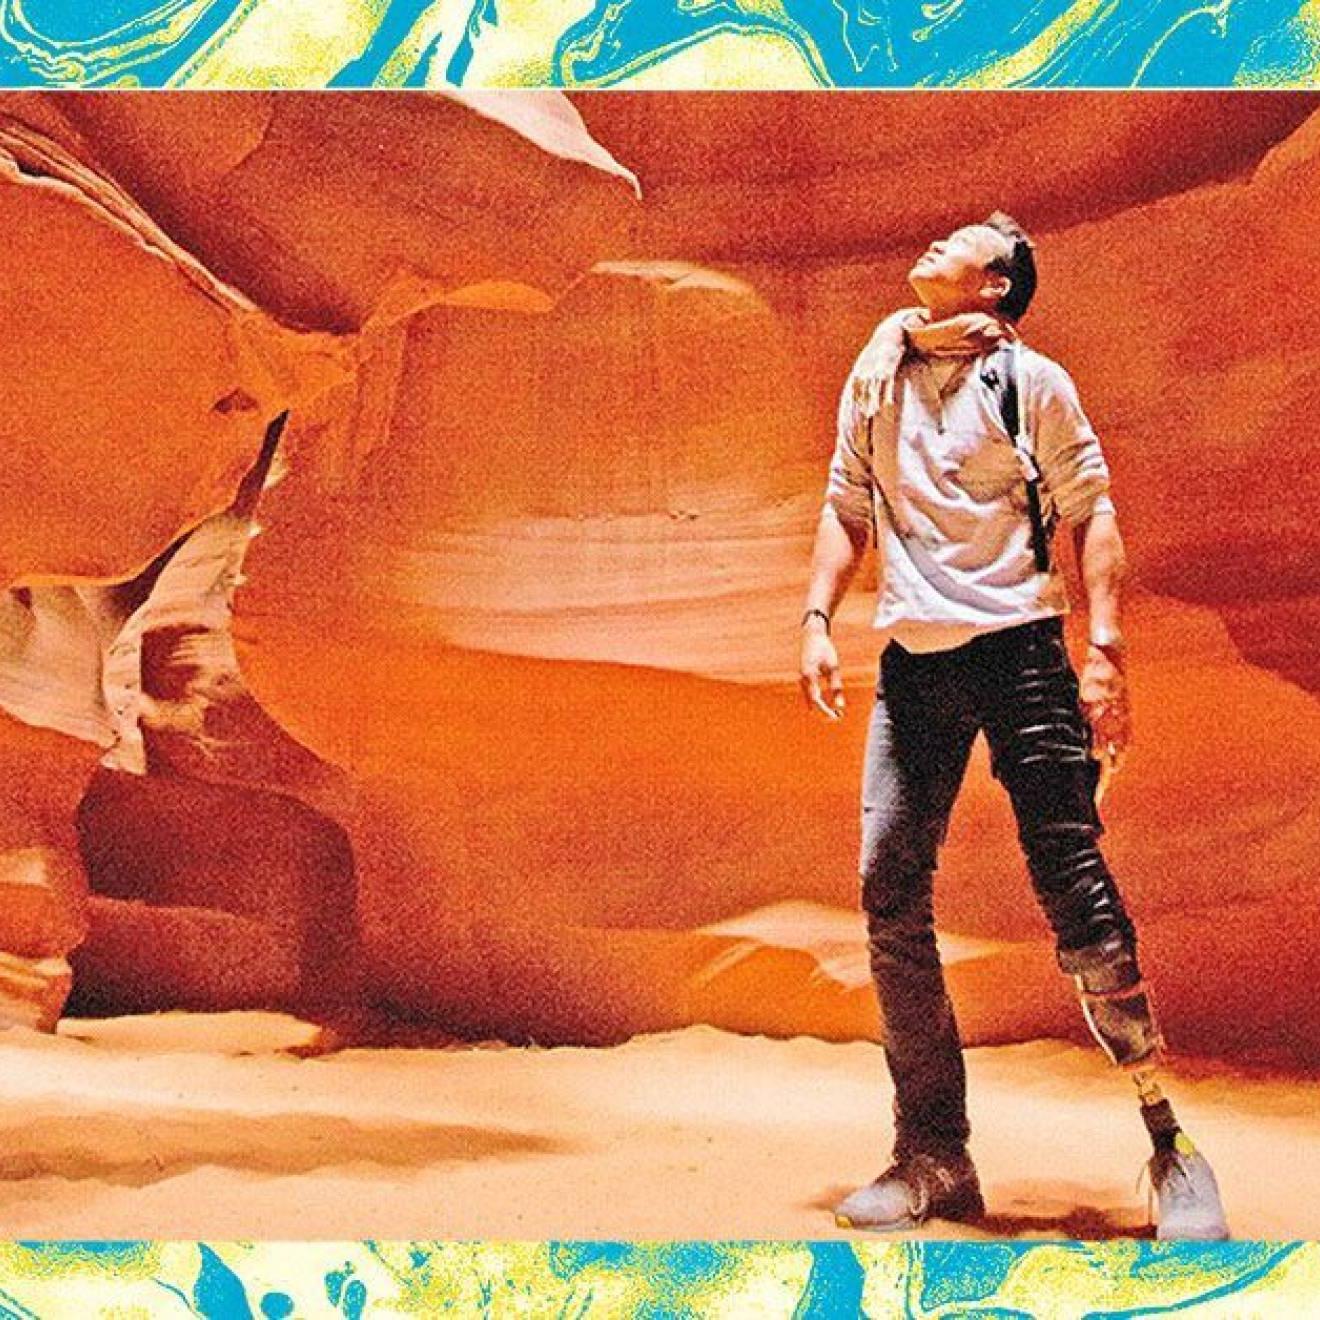 一位膝盖以下装着义肢的男性徒步旅行者仰望着峡谷的红色岩壁. 照片经过编辑和过滤，看起来颗粒状，周围是一个蓝绿色的纹理框架.